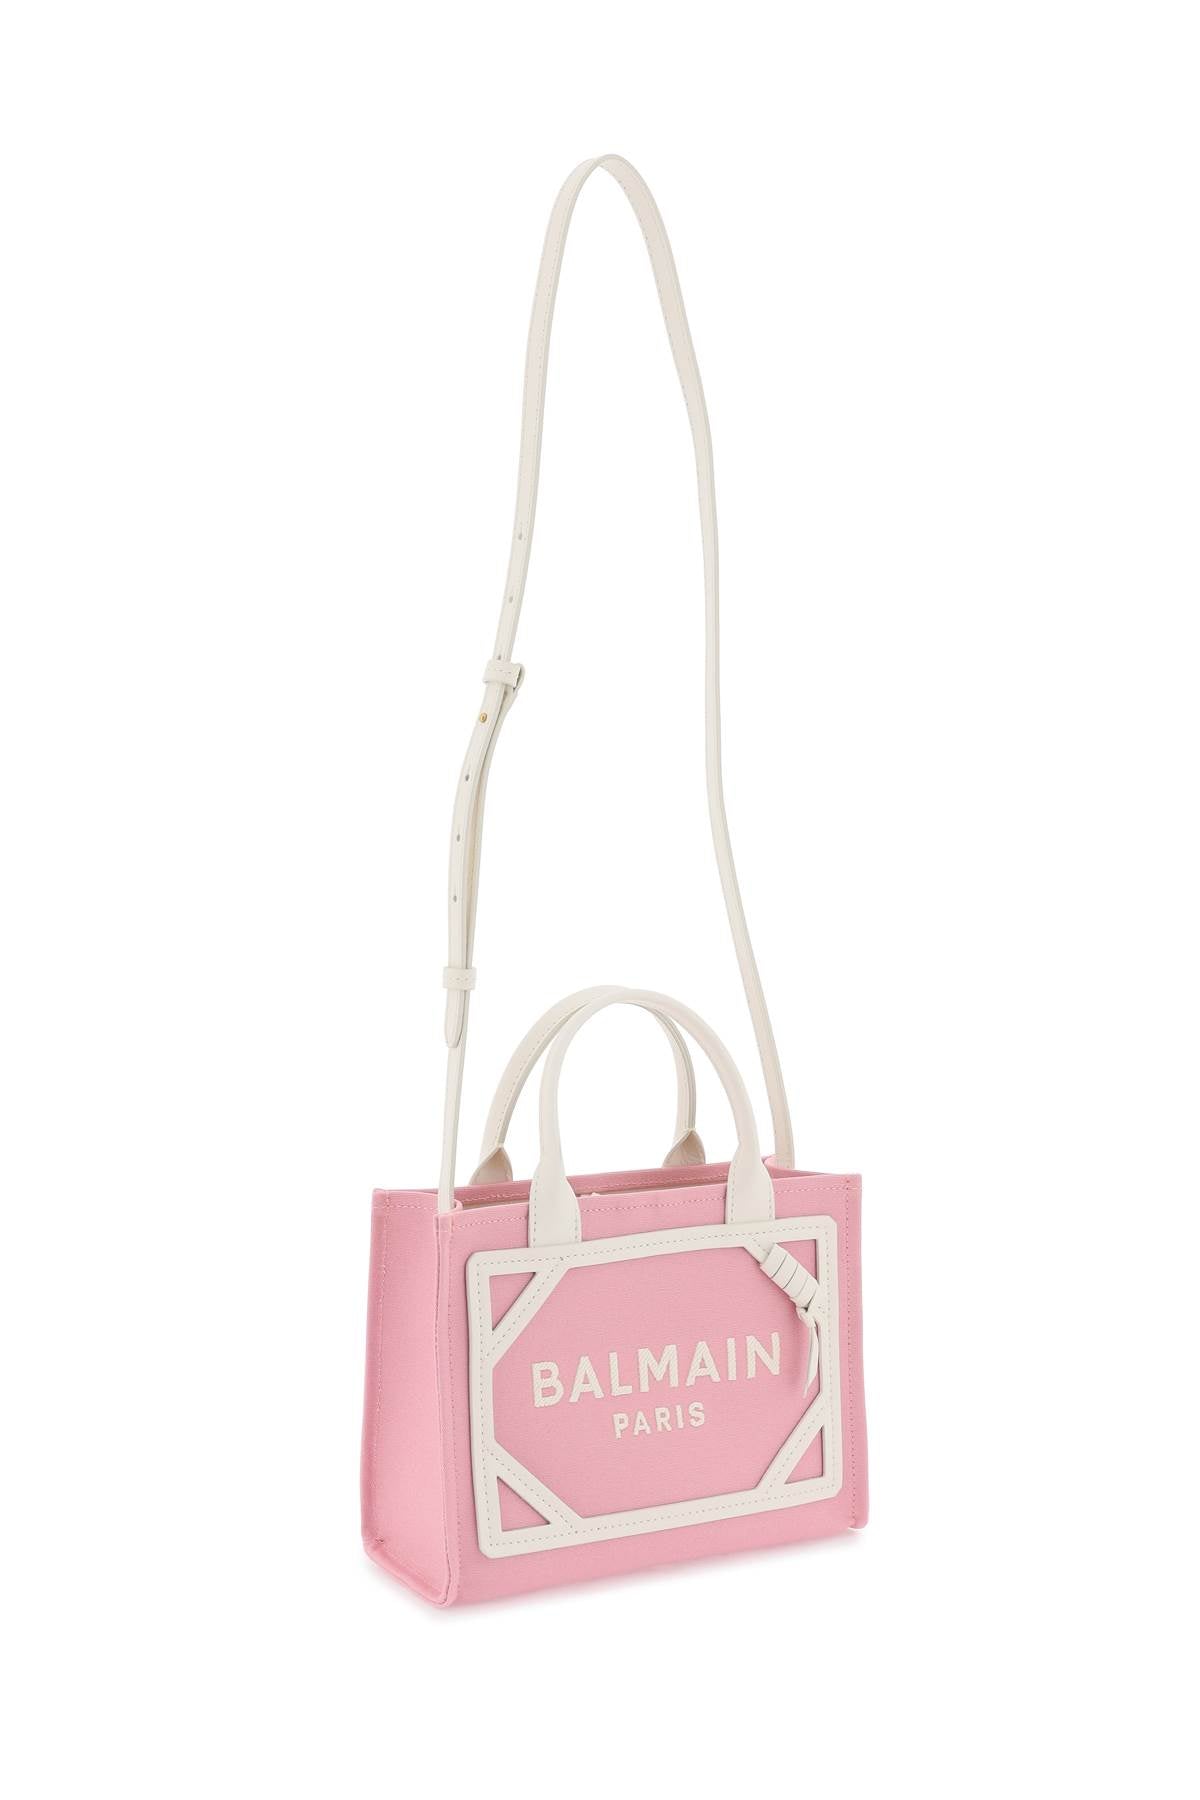 Balmain b-army tote bag